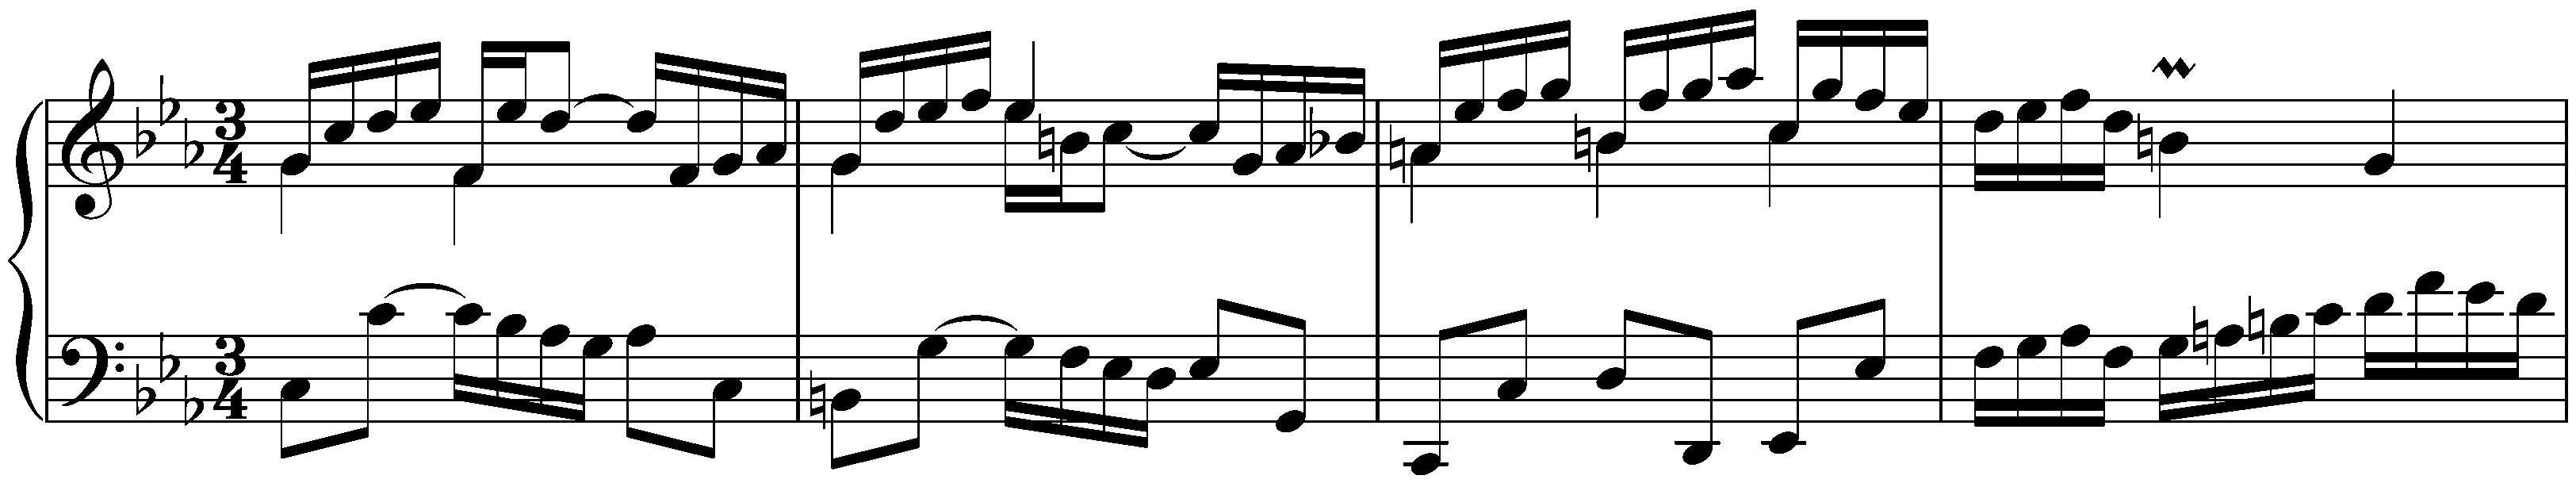 Partita no. 2 in C minor, BWV 826; 4. Sarabande